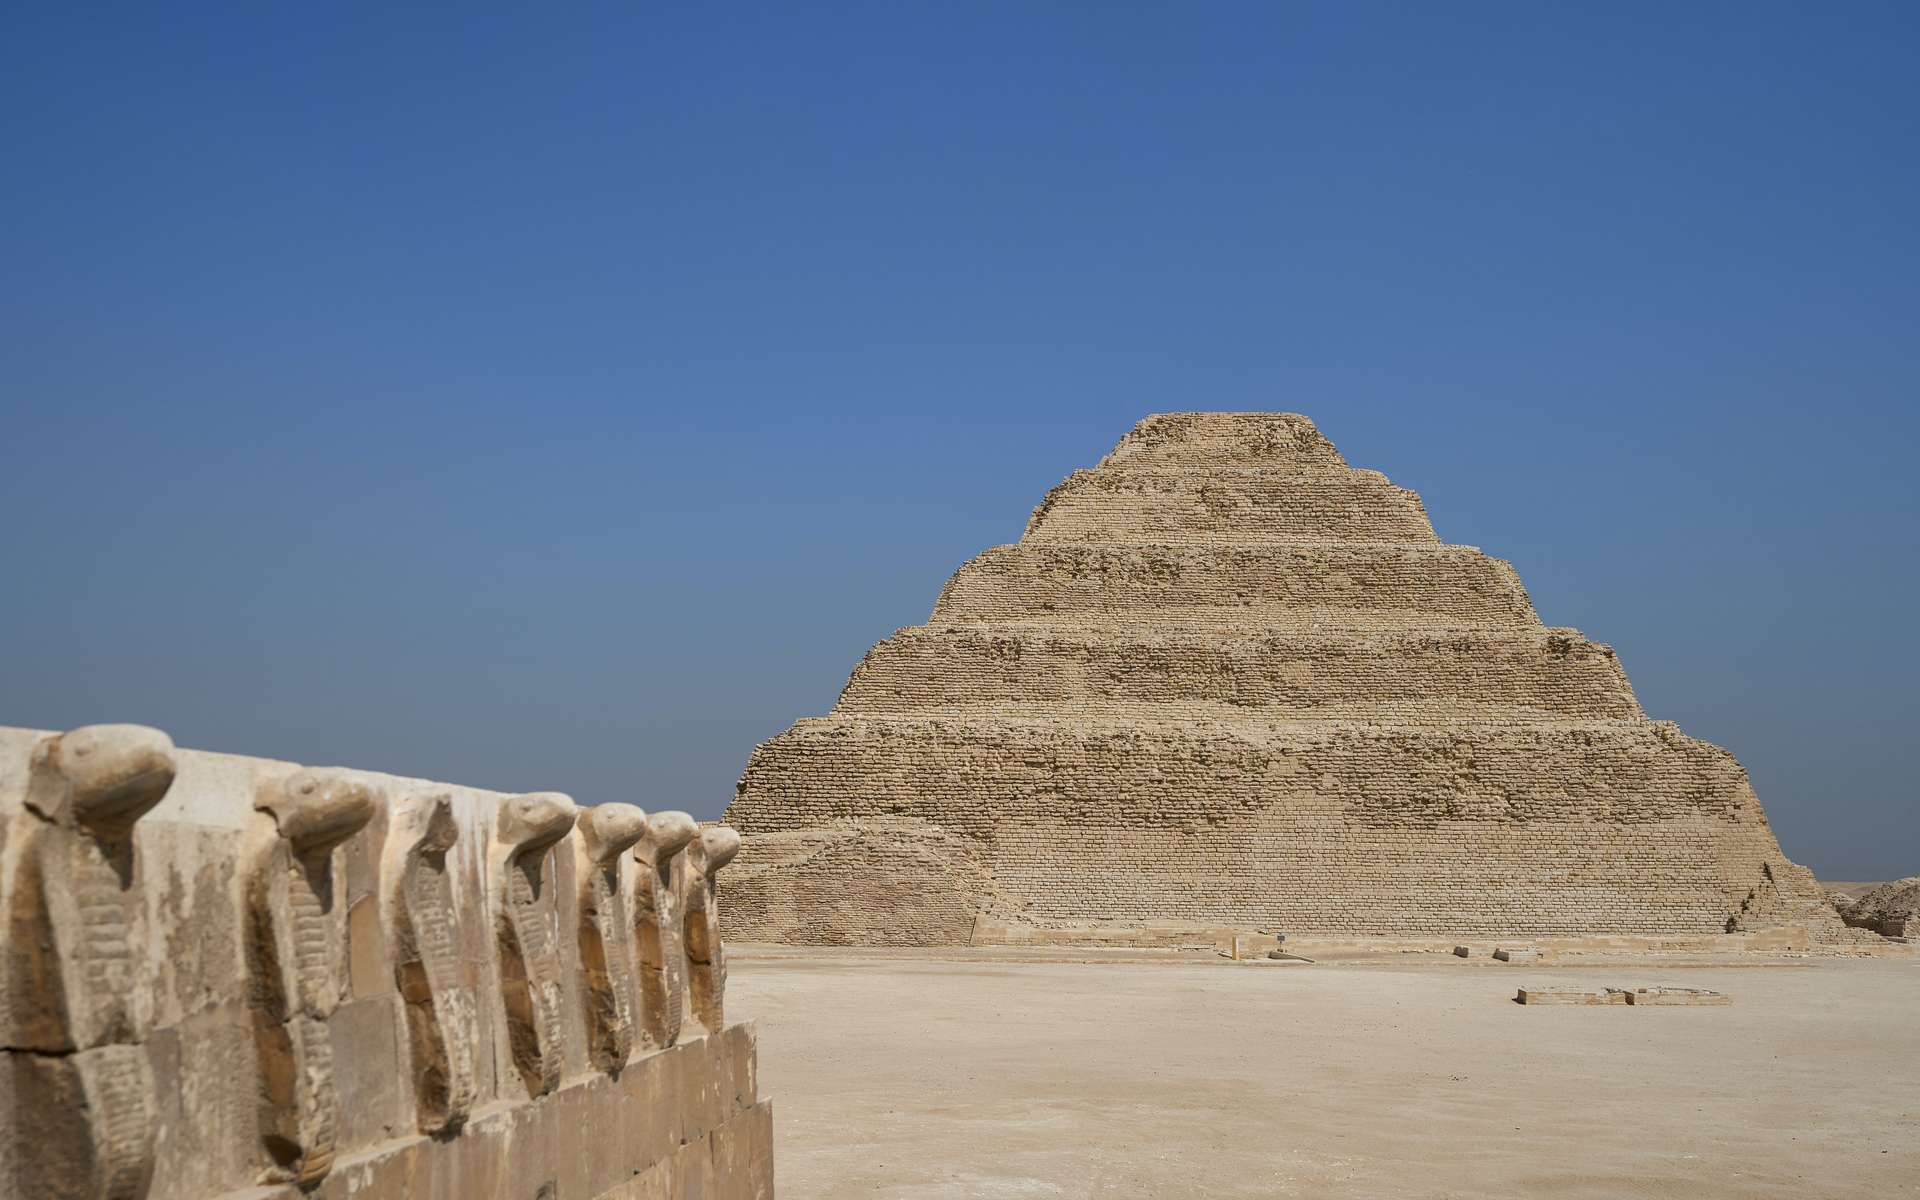 Cette momie recouverte d'or pourrait être une des plus anciennes découvertes en Égypte